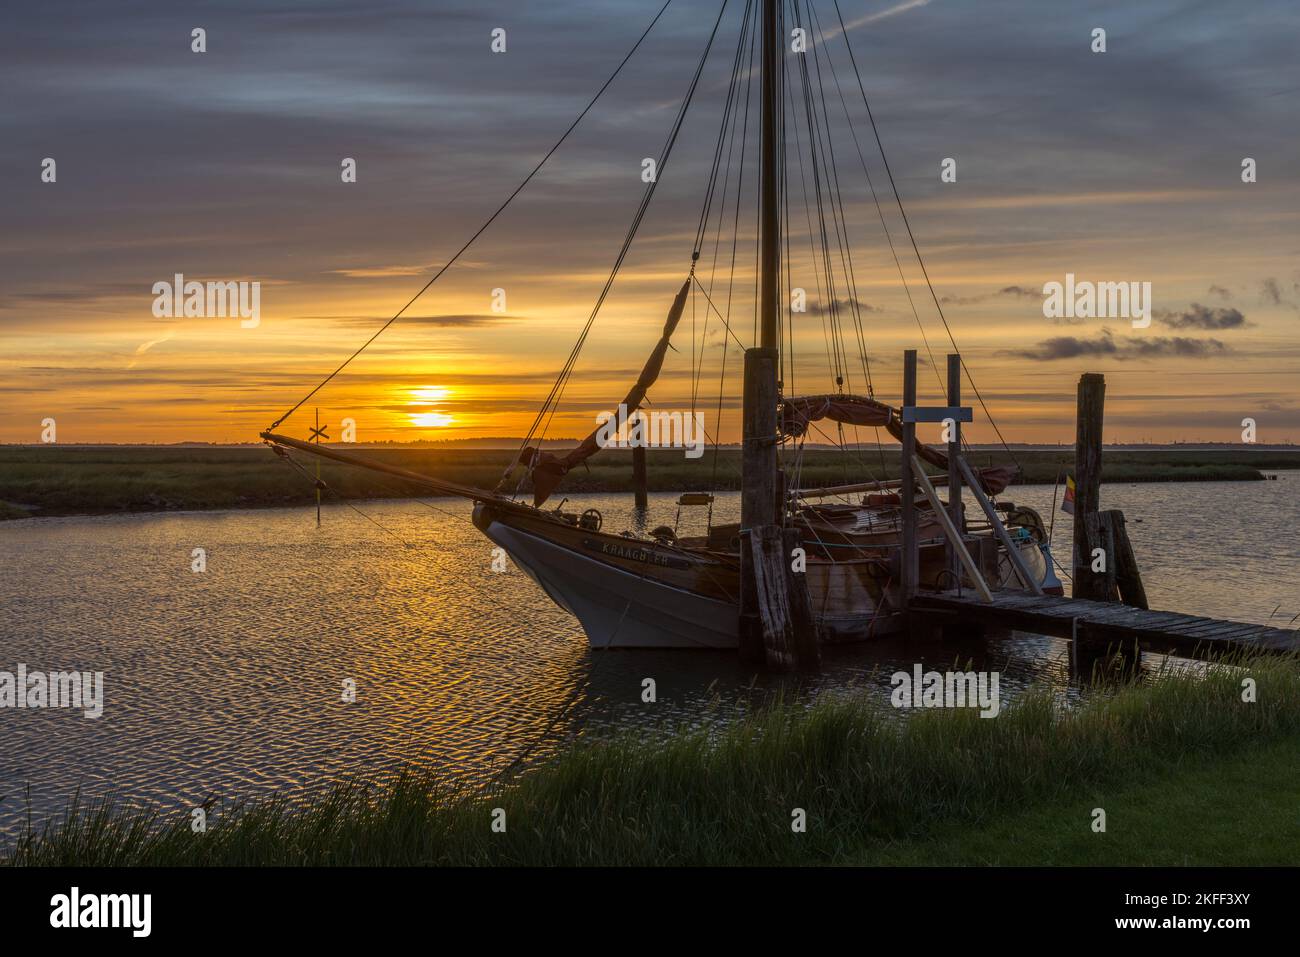 Sonnenaufgang mit Segelschiff am Süderhafen, Insel Nordstrand, Nordfriesland, Schleswig-Holstein, Allemagne Banque D'Images